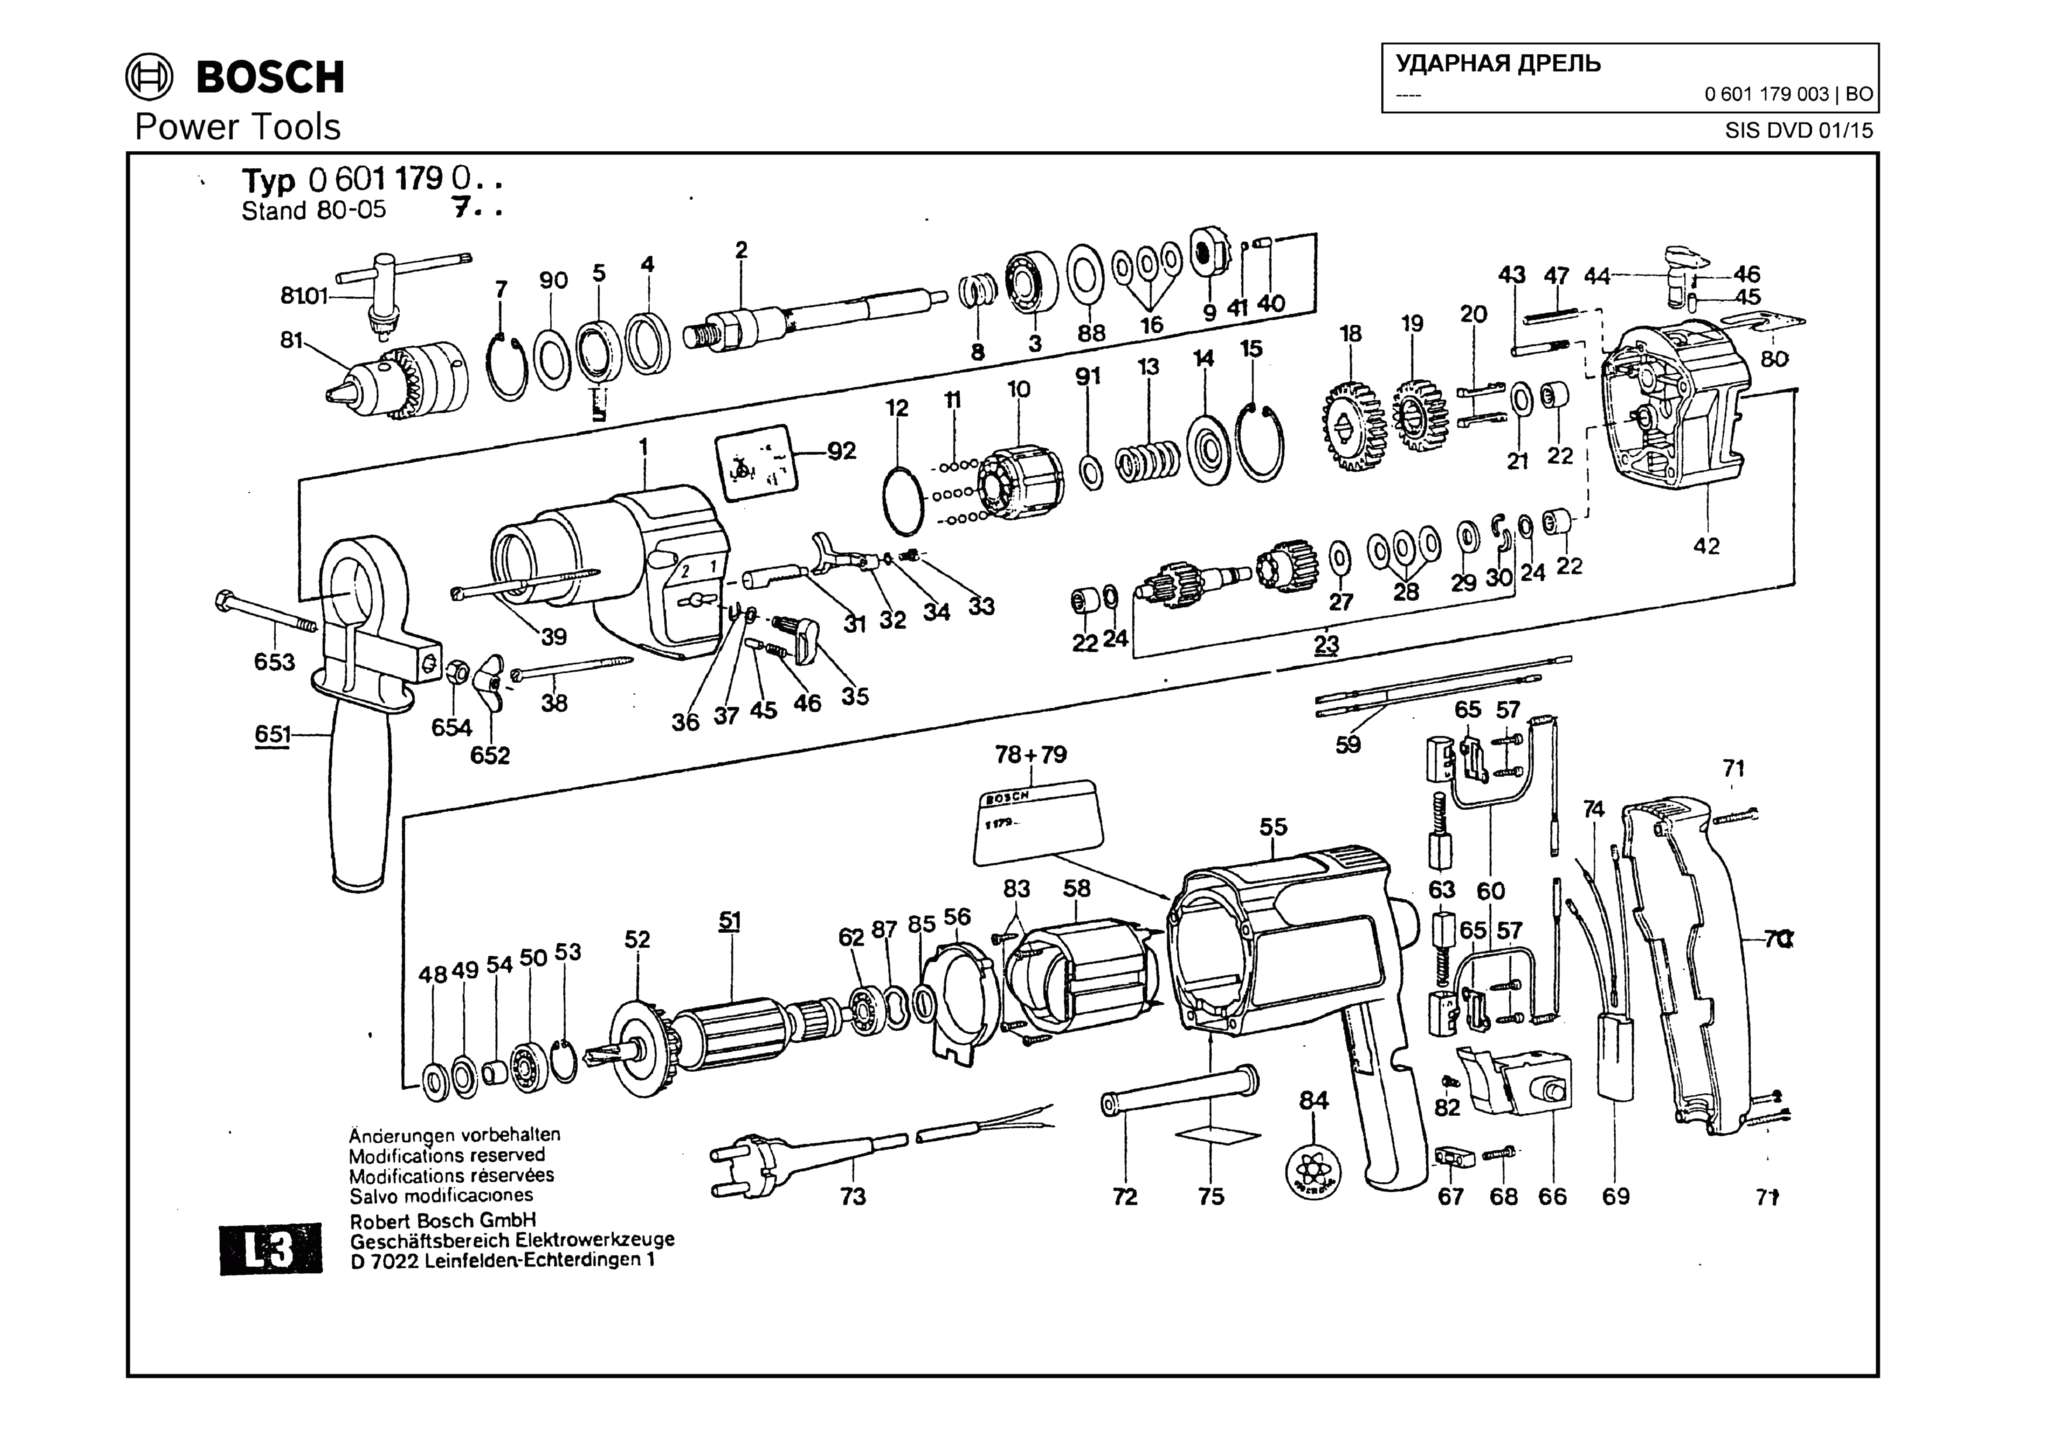 Запчасти, схема и деталировка Bosch (ТИП 0601179003)